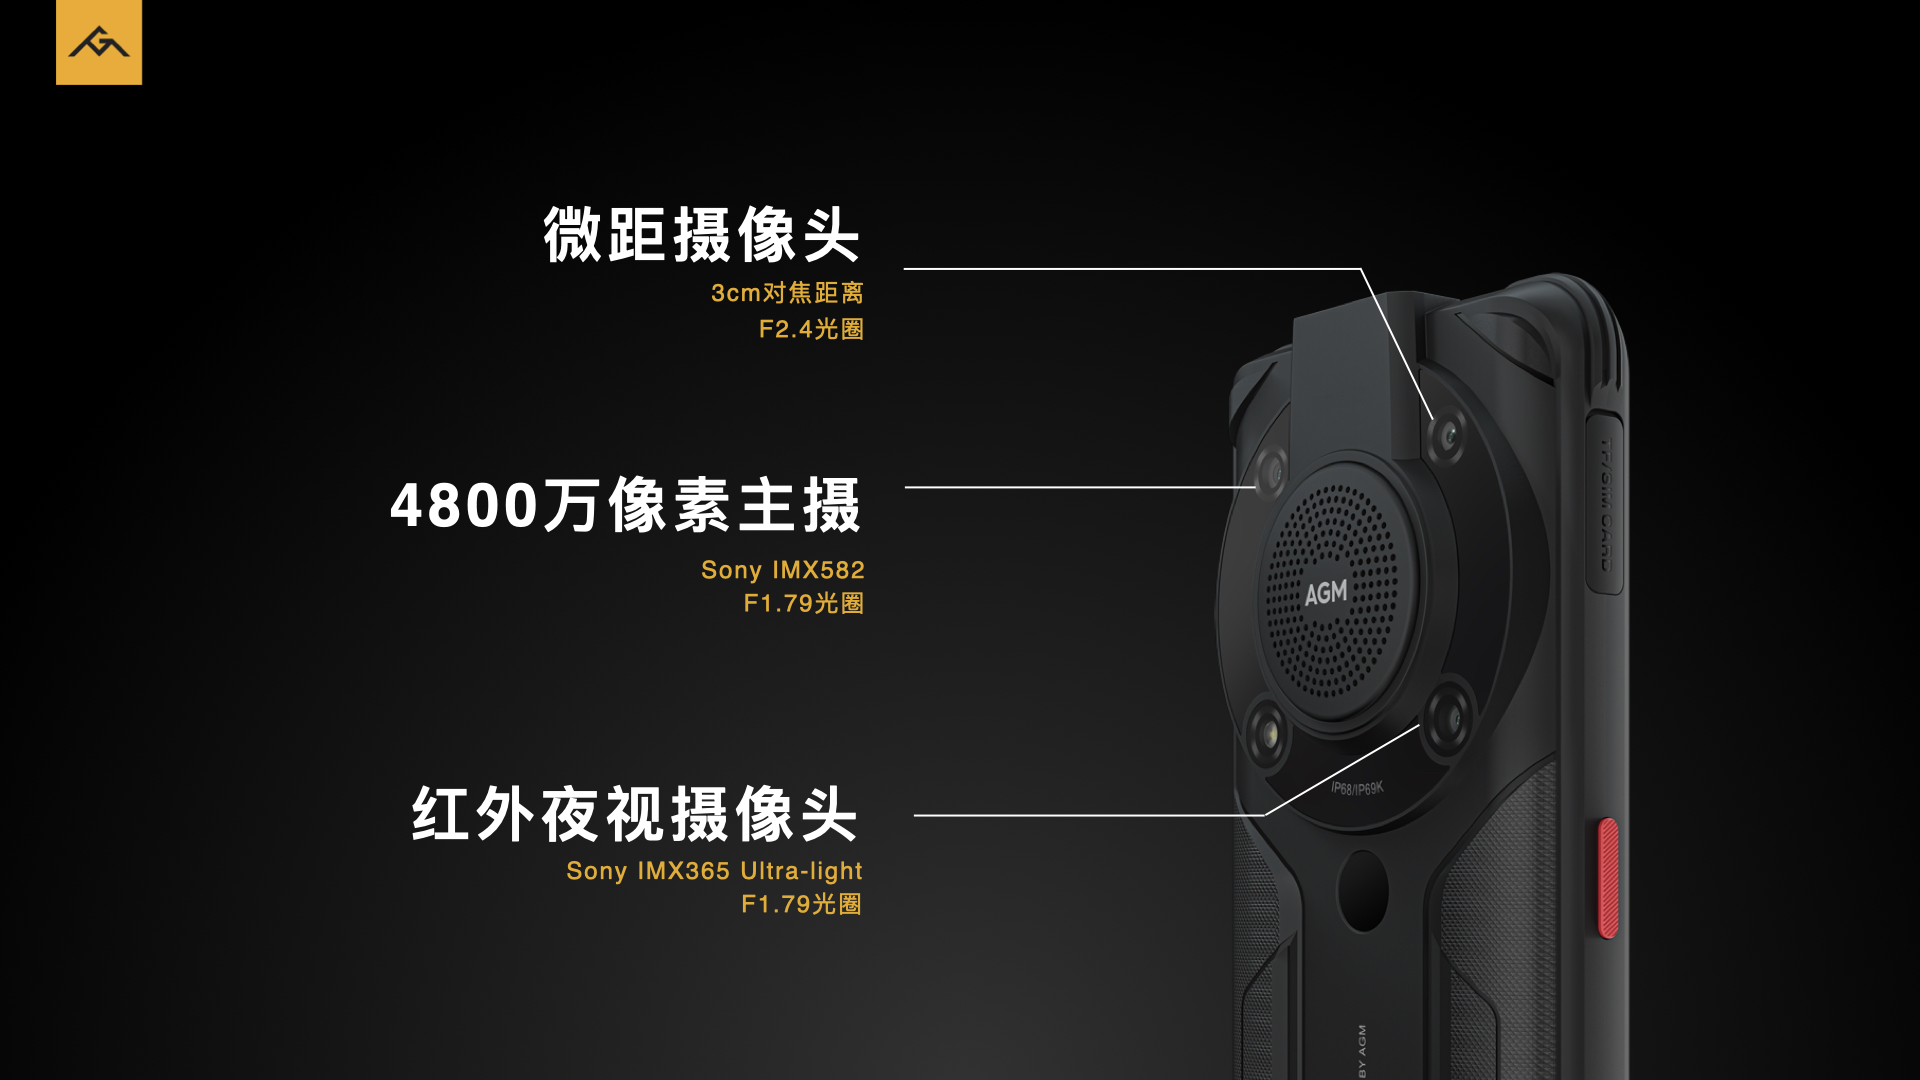  3699元起 AGM G1系列发布：零下30度可用、超强三防